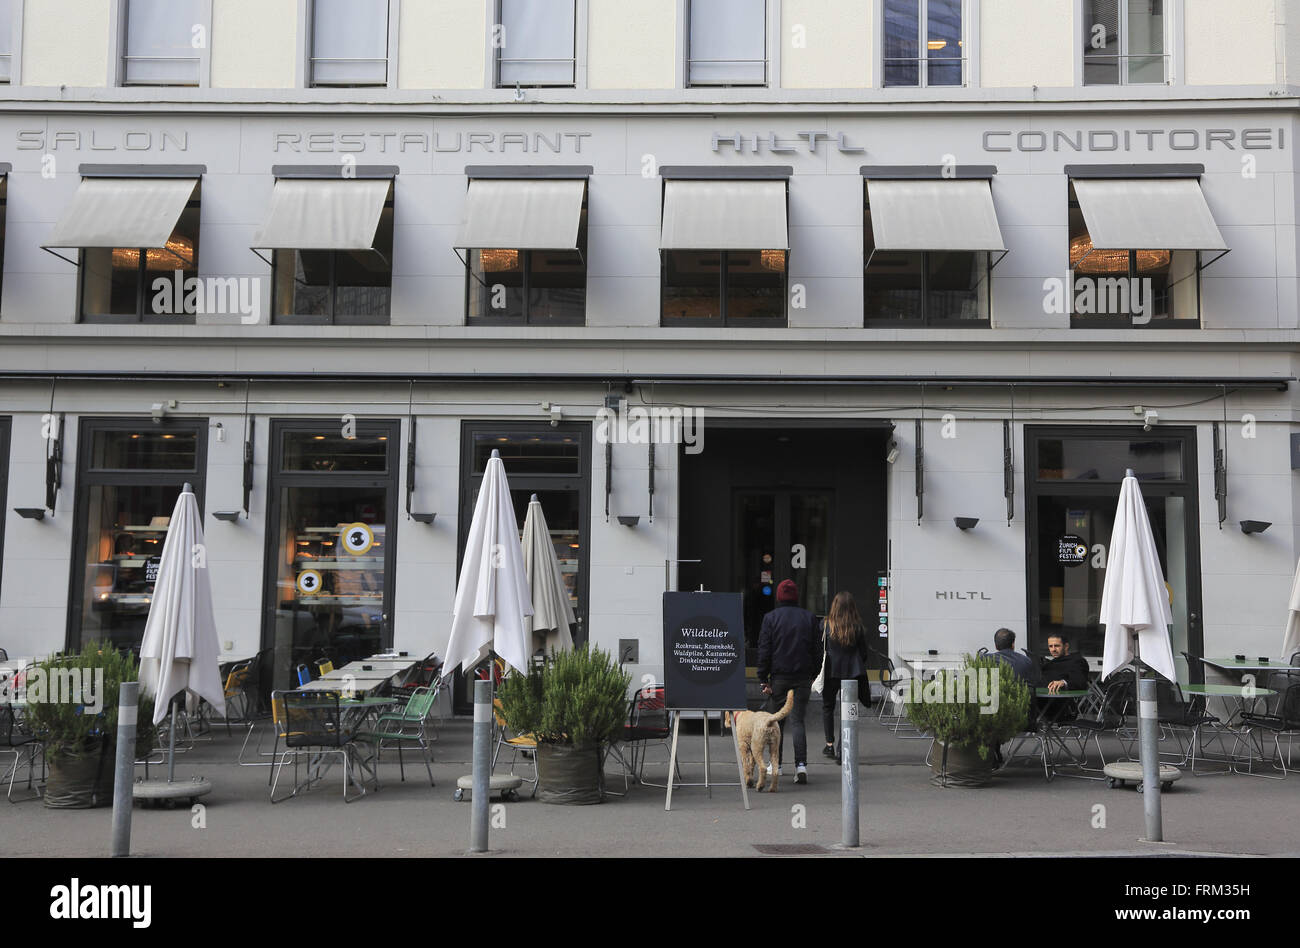 La vista de Hiltl restaurante más antiguo del mundo abren continuamente restaurante vegetariano en Zurich, Suiza Foto de stock